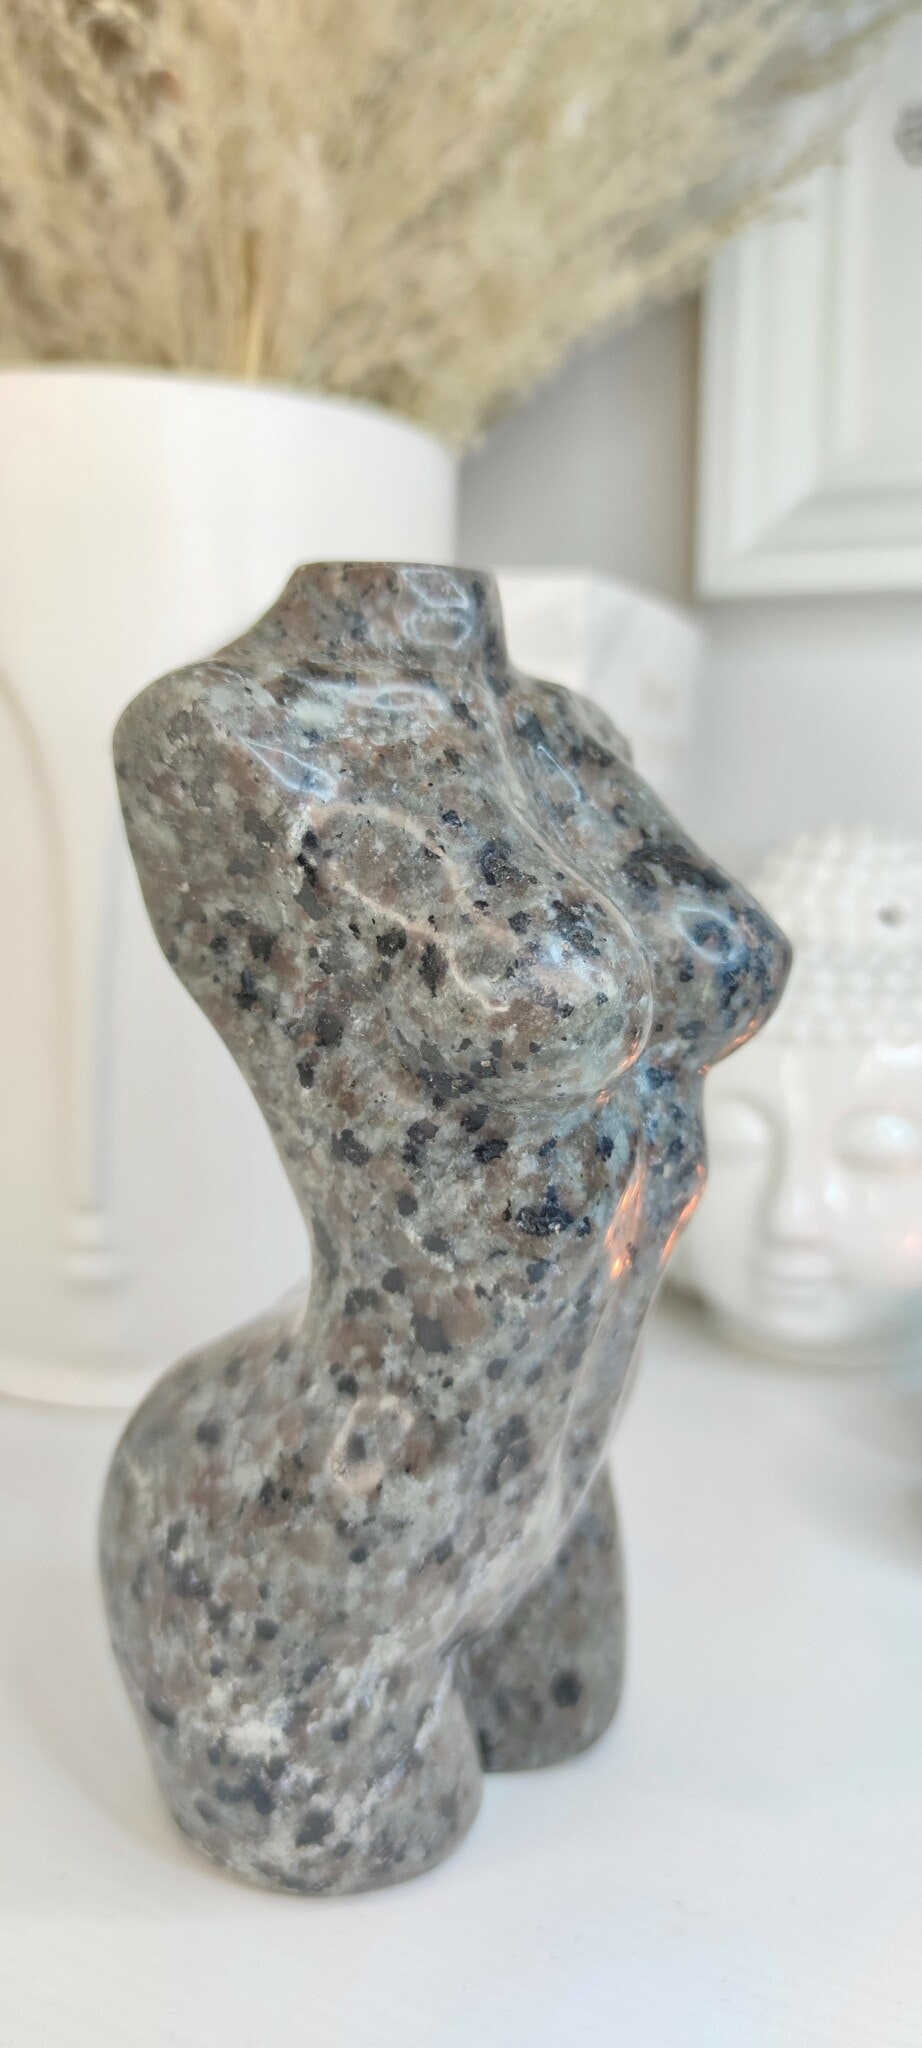 yooperlite carving kvinnokropp staty inredning uvreaktiv